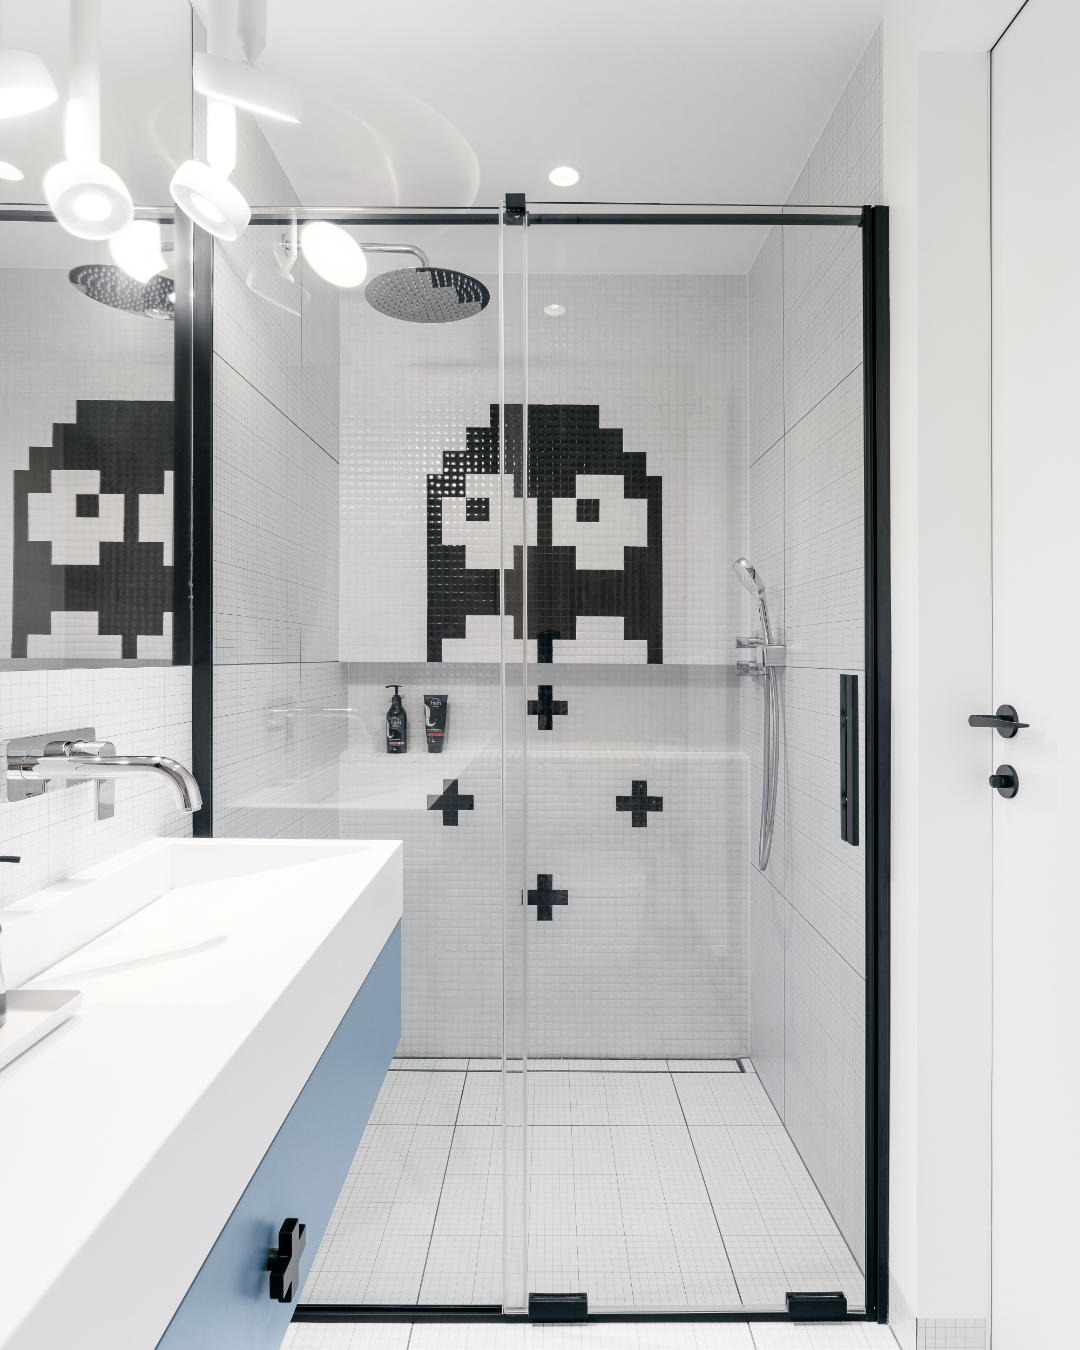 mozaika pod prysznic - pixelart - pixel art - gaming - prysznic - mozaika - Trufle Mozaiki -